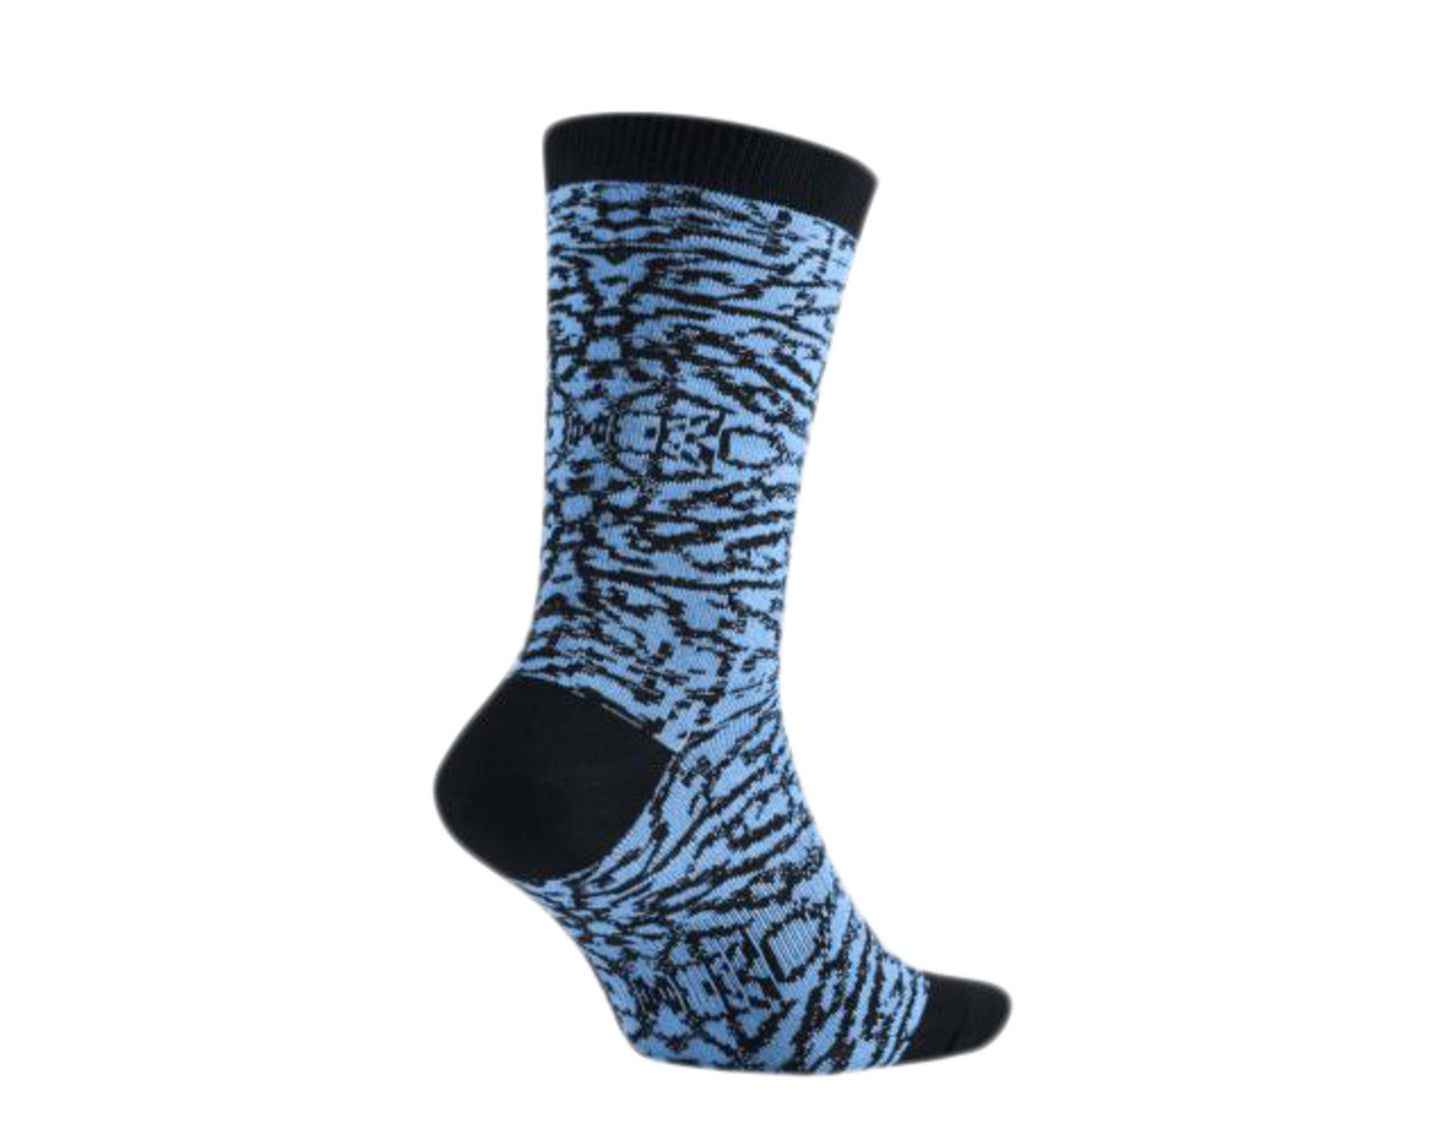 Nike Air Jordan Seasonal Elephant Print Crew University Blue/Black Socks 724930-412